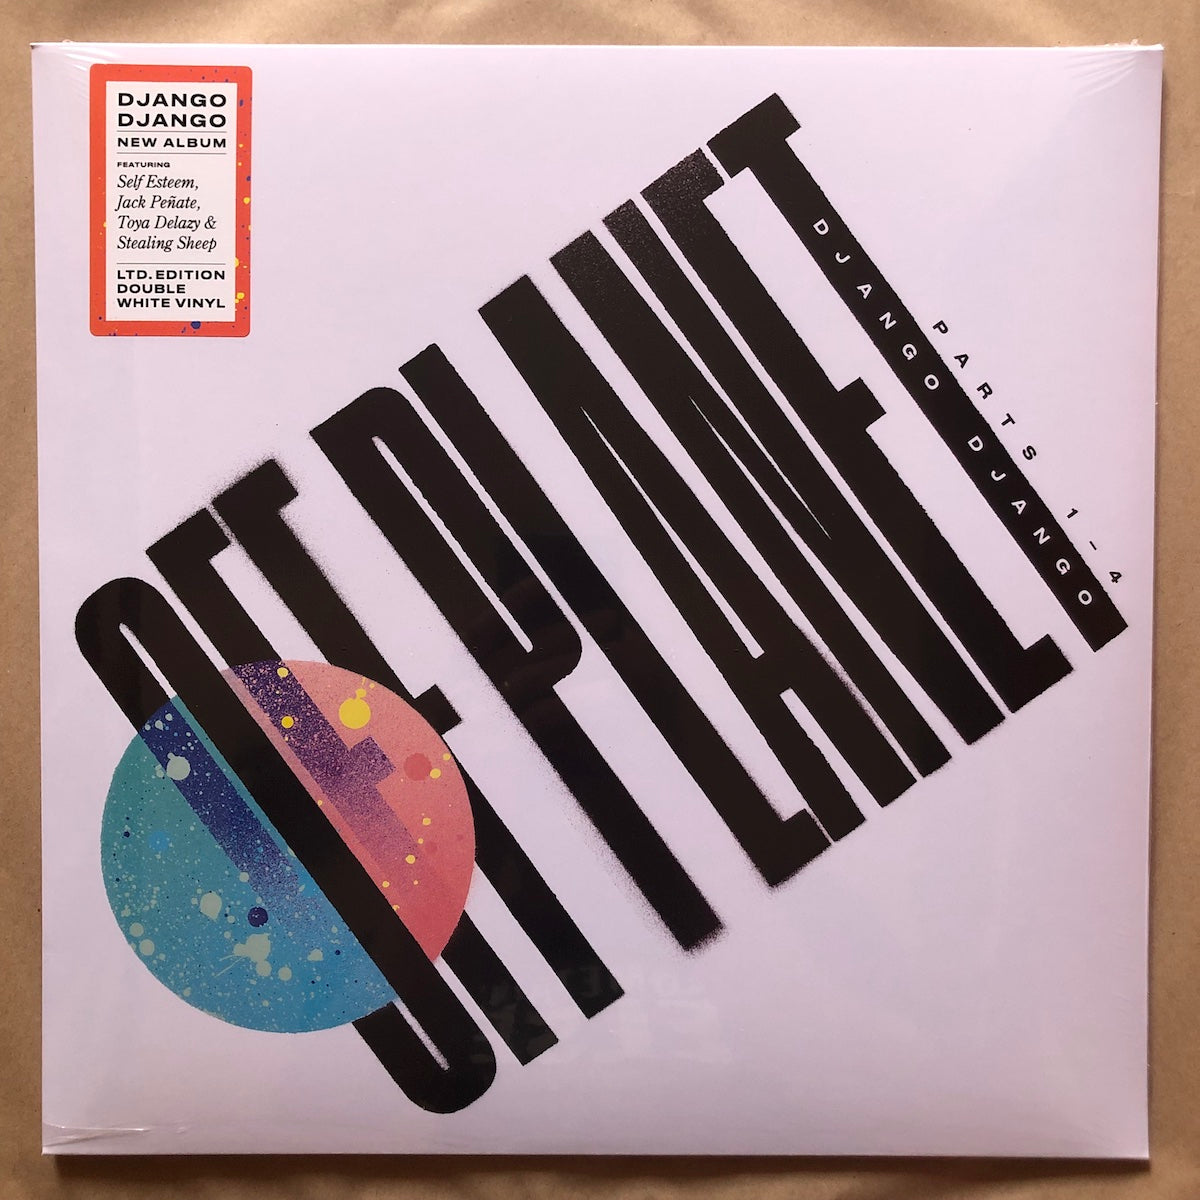 Off Planet: Solid White Double Vinyl LP